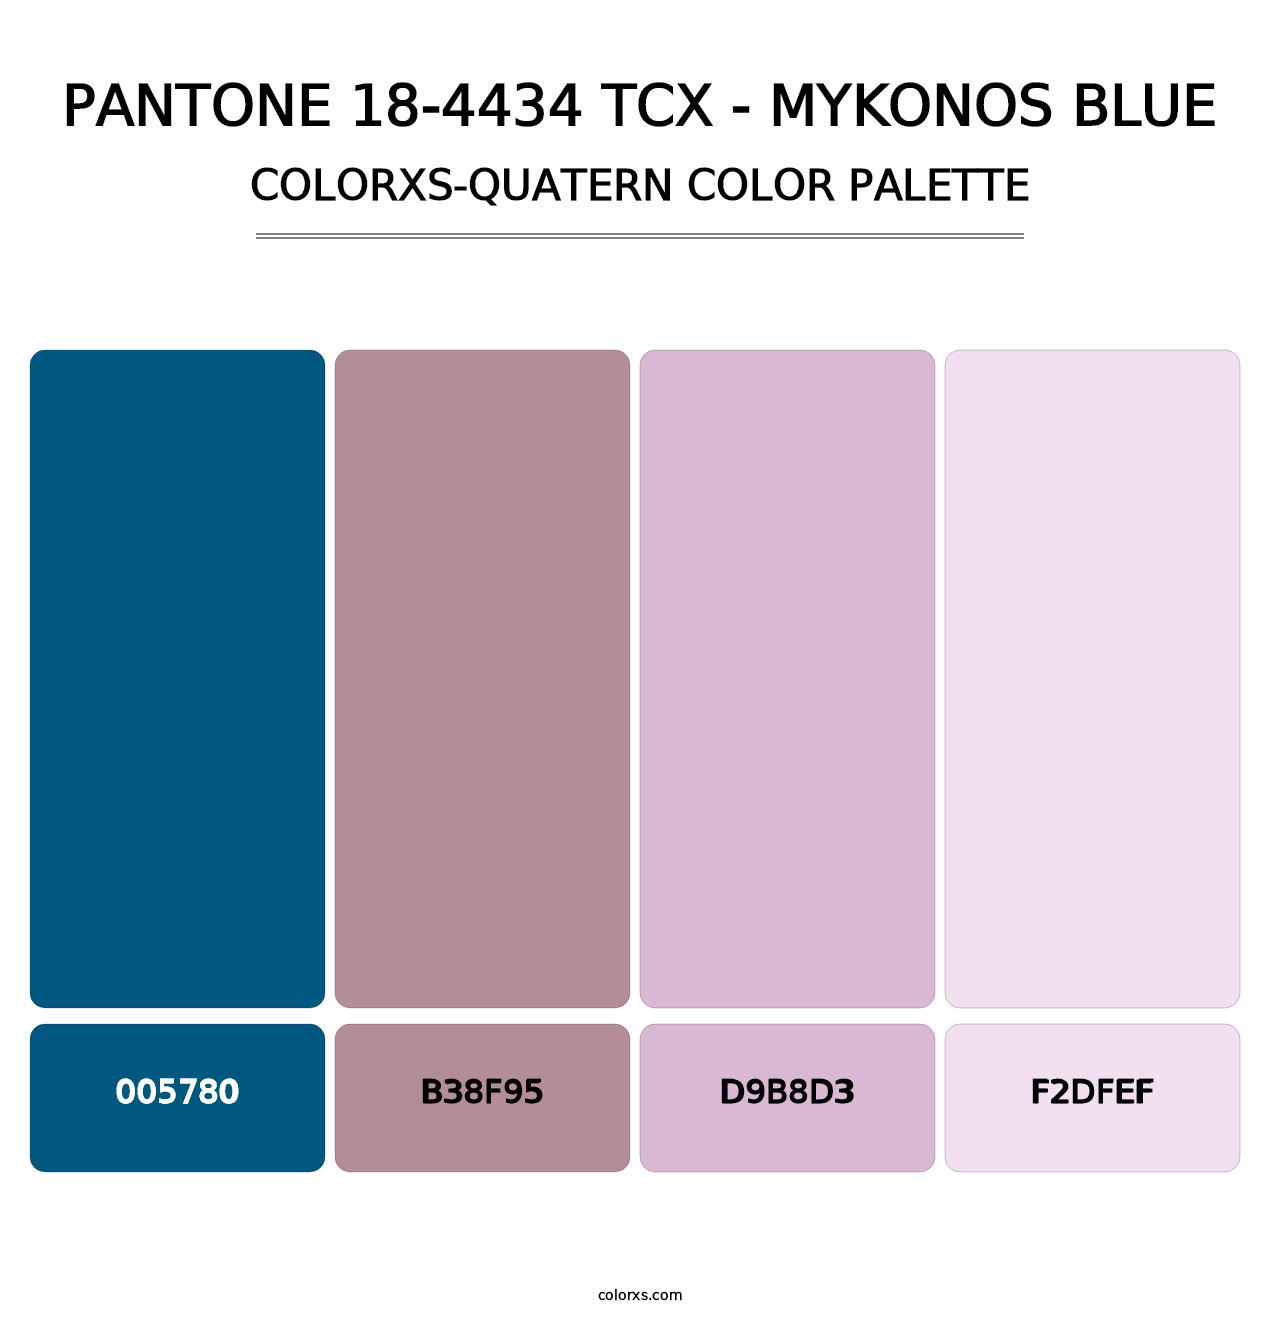 PANTONE 18-4434 TCX - Mykonos Blue - Colorxs Quatern Palette